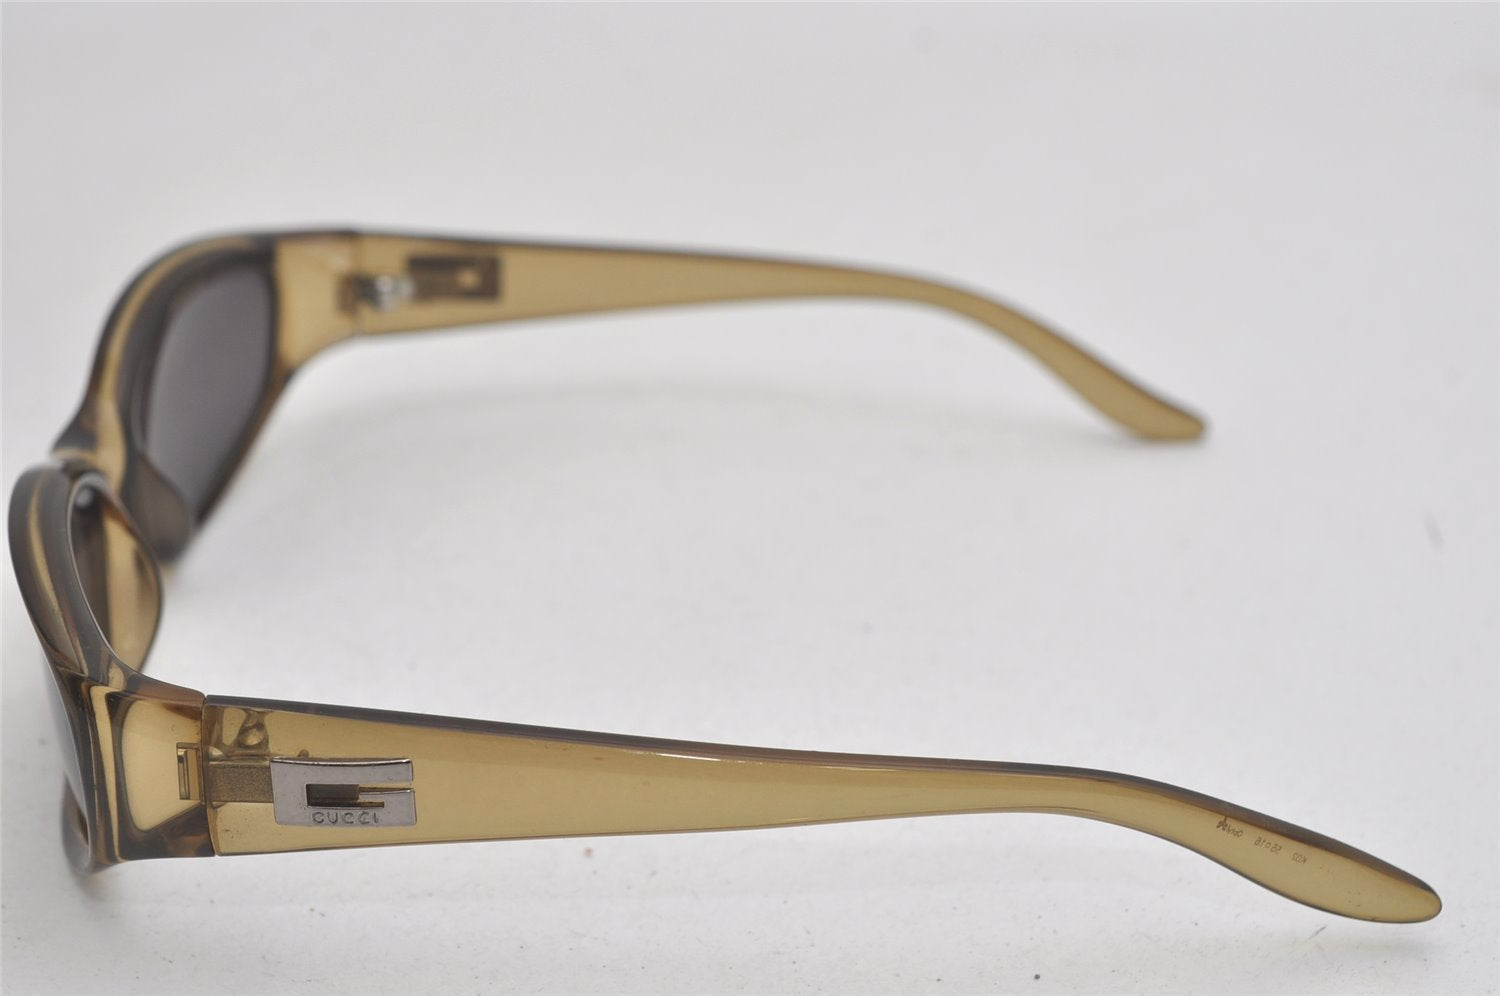 Authentic GUCCI Vintage Sunglasses K02 Plastic Gray 9769J